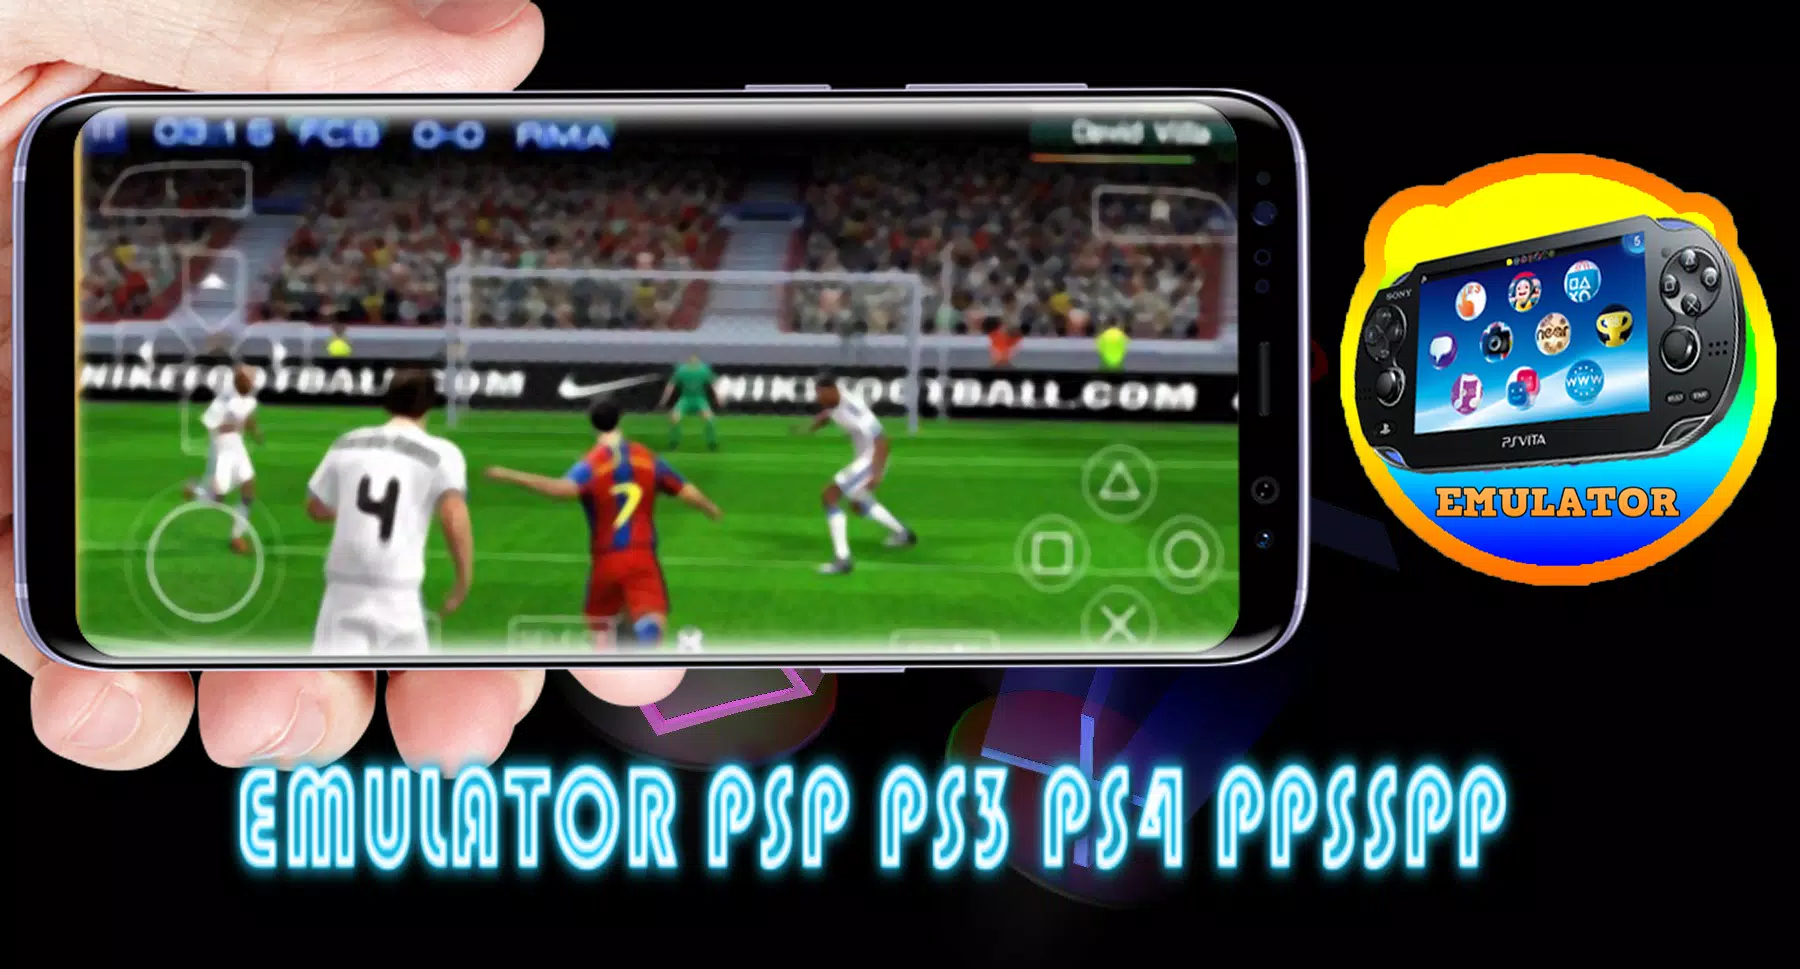 Download do APK de Novo downloader do jogo do emulador PSP para Android